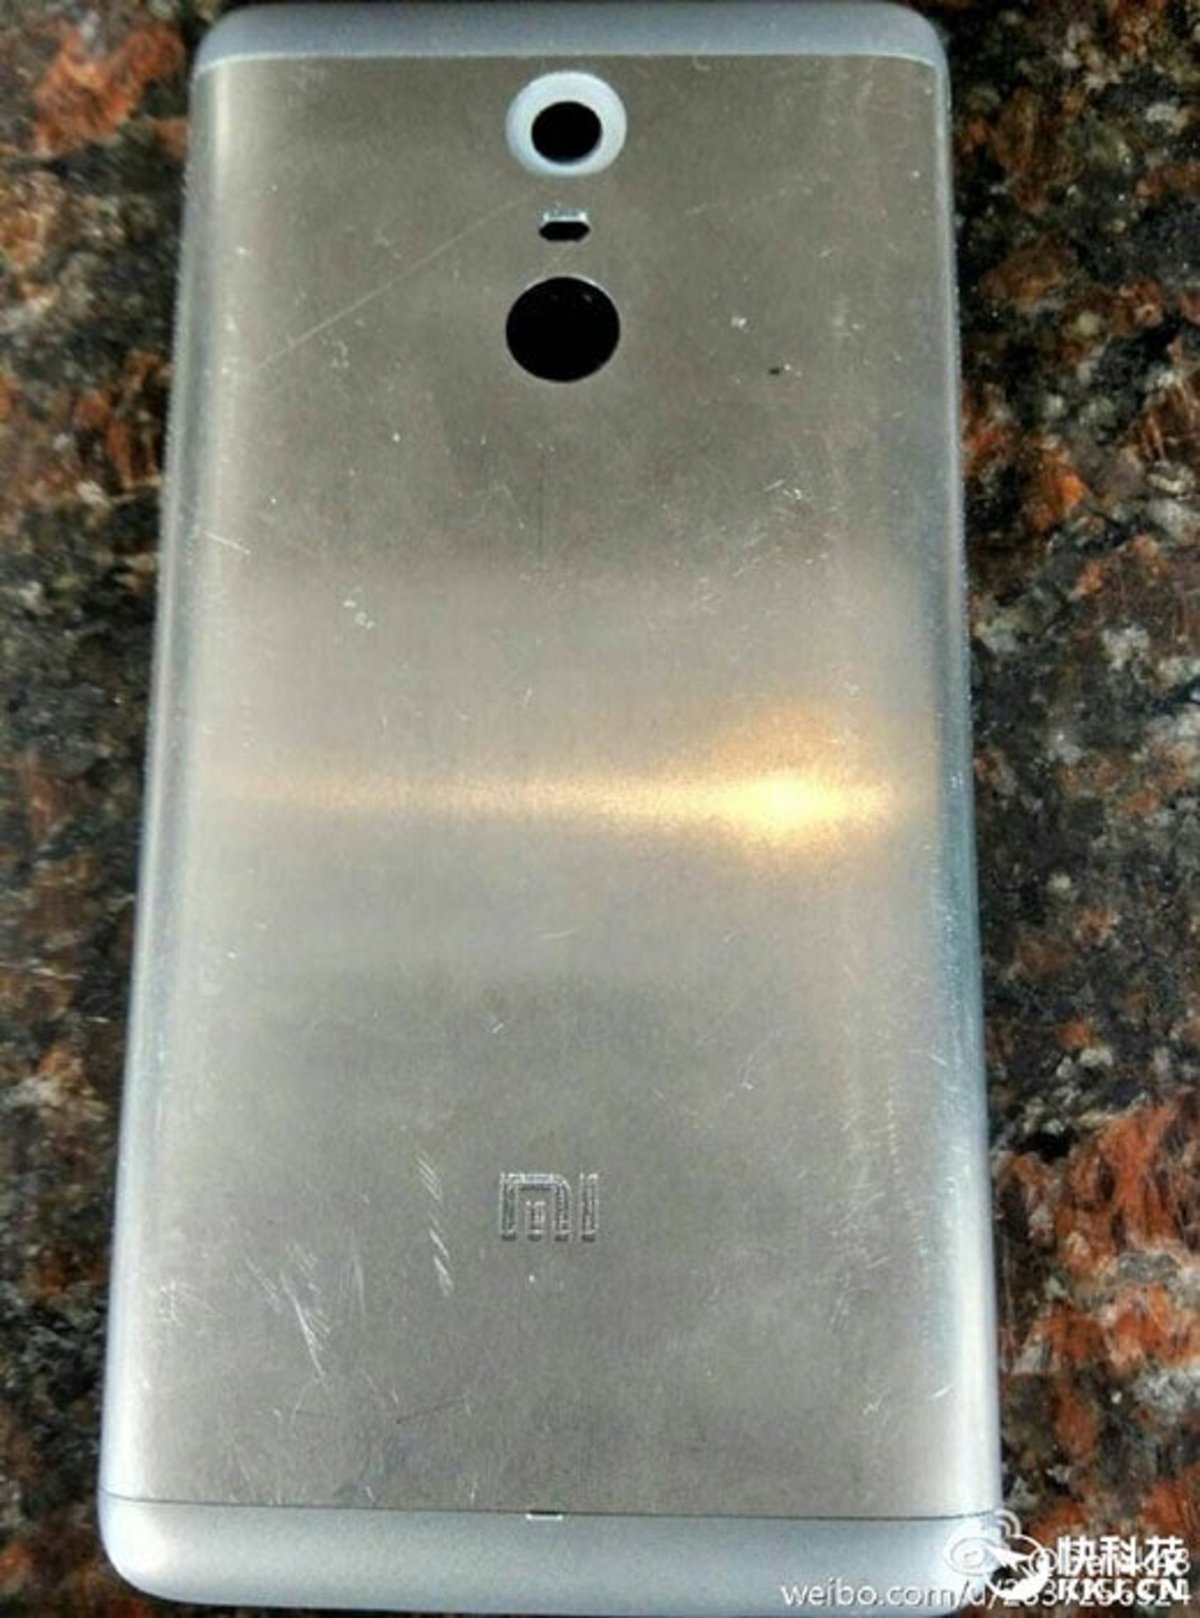 Se filtra el diseño final de la parte trasera del Xiaomi Redmi Note 2